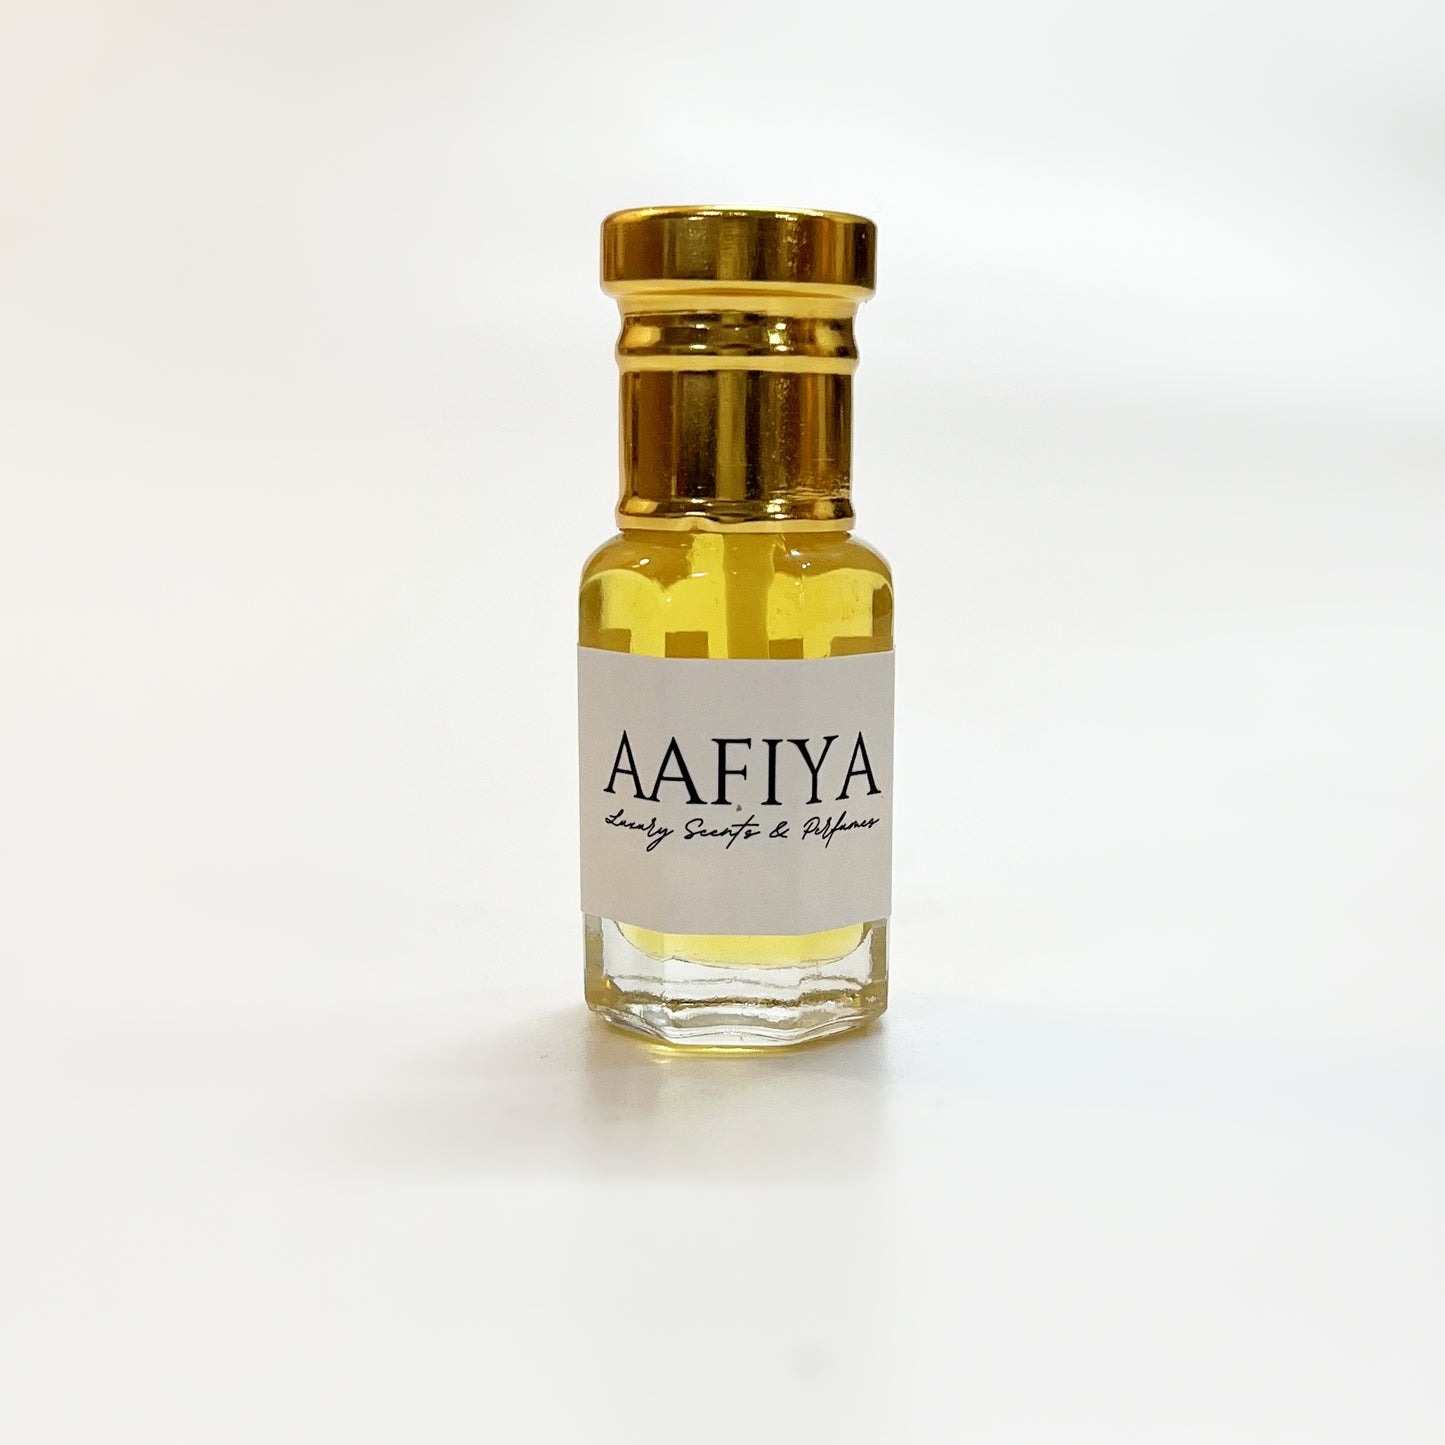 Tobacco Blaze Aafiya Luxury Scents & Perfumes